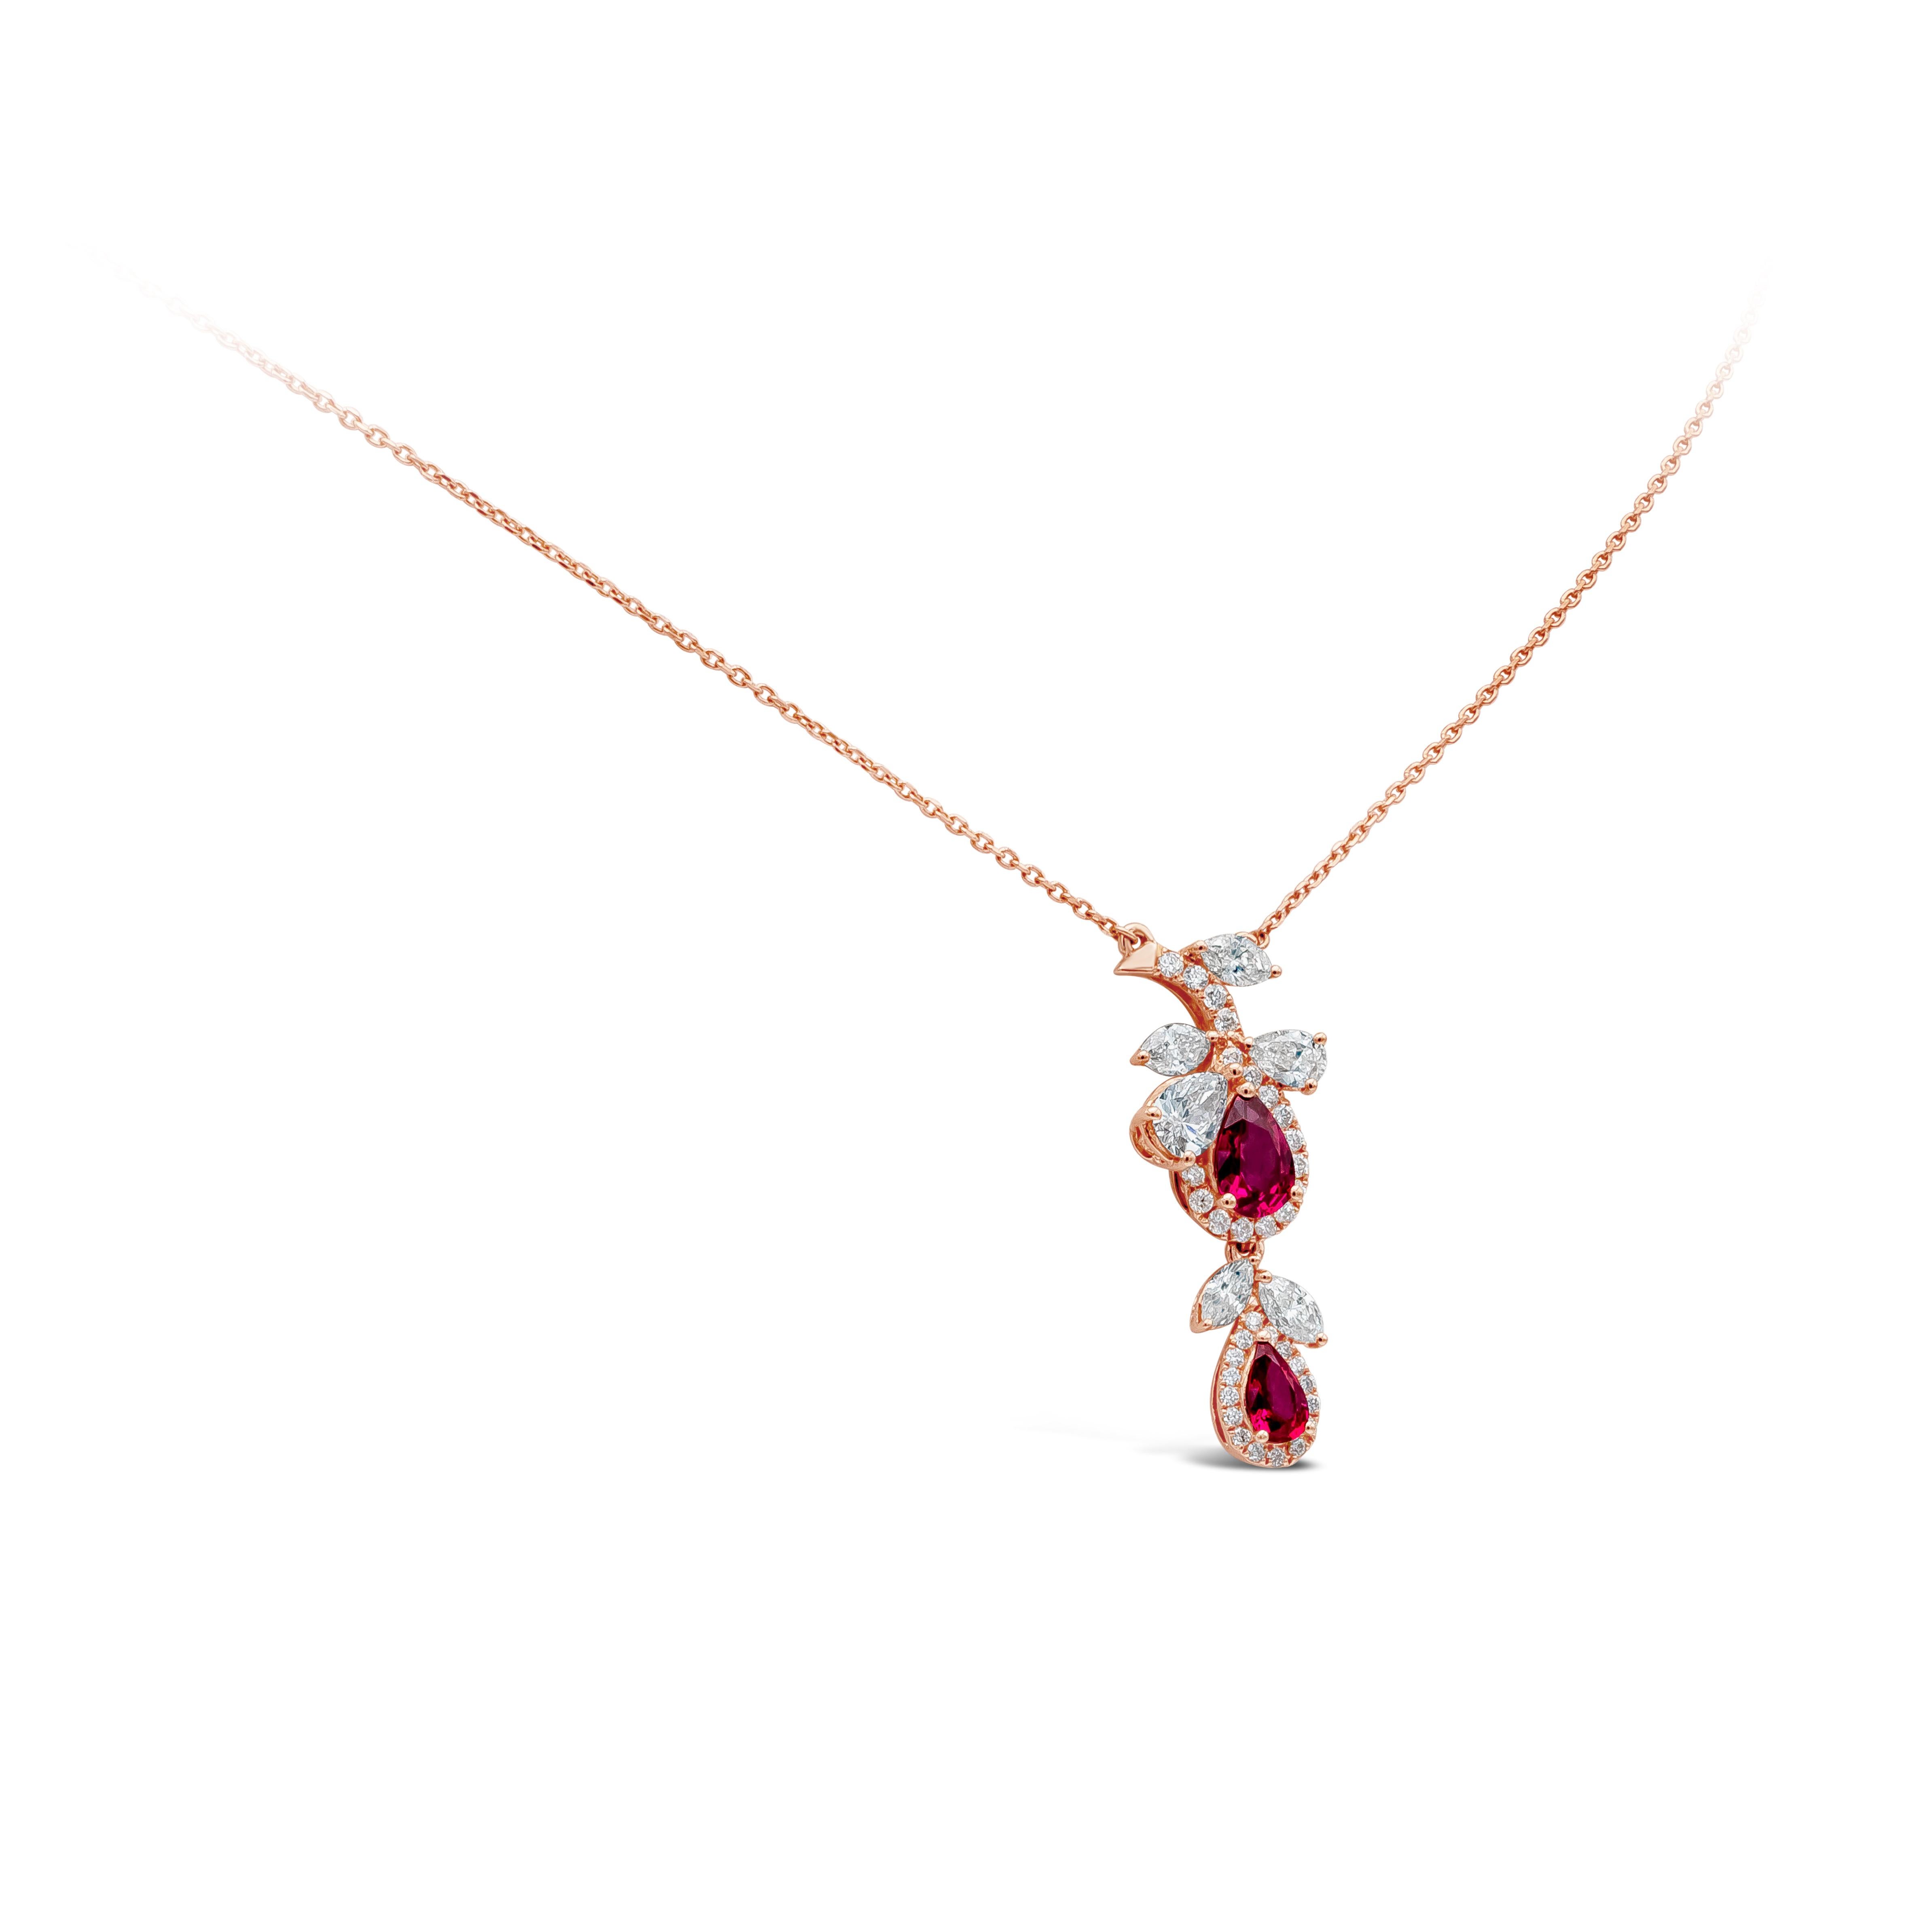 Floral Motiv Anhänger Halskette mit einem lebendigen Birne Form Rubin mit einem Gewicht von etwa 0,62 Karat, akzentuiert durch gemischte Form Diamanten, die etwa 0,78 Karat, FGG Farbe und VS in Klarheit wiegen.
Aufgehängt an einer 18 Zoll langen